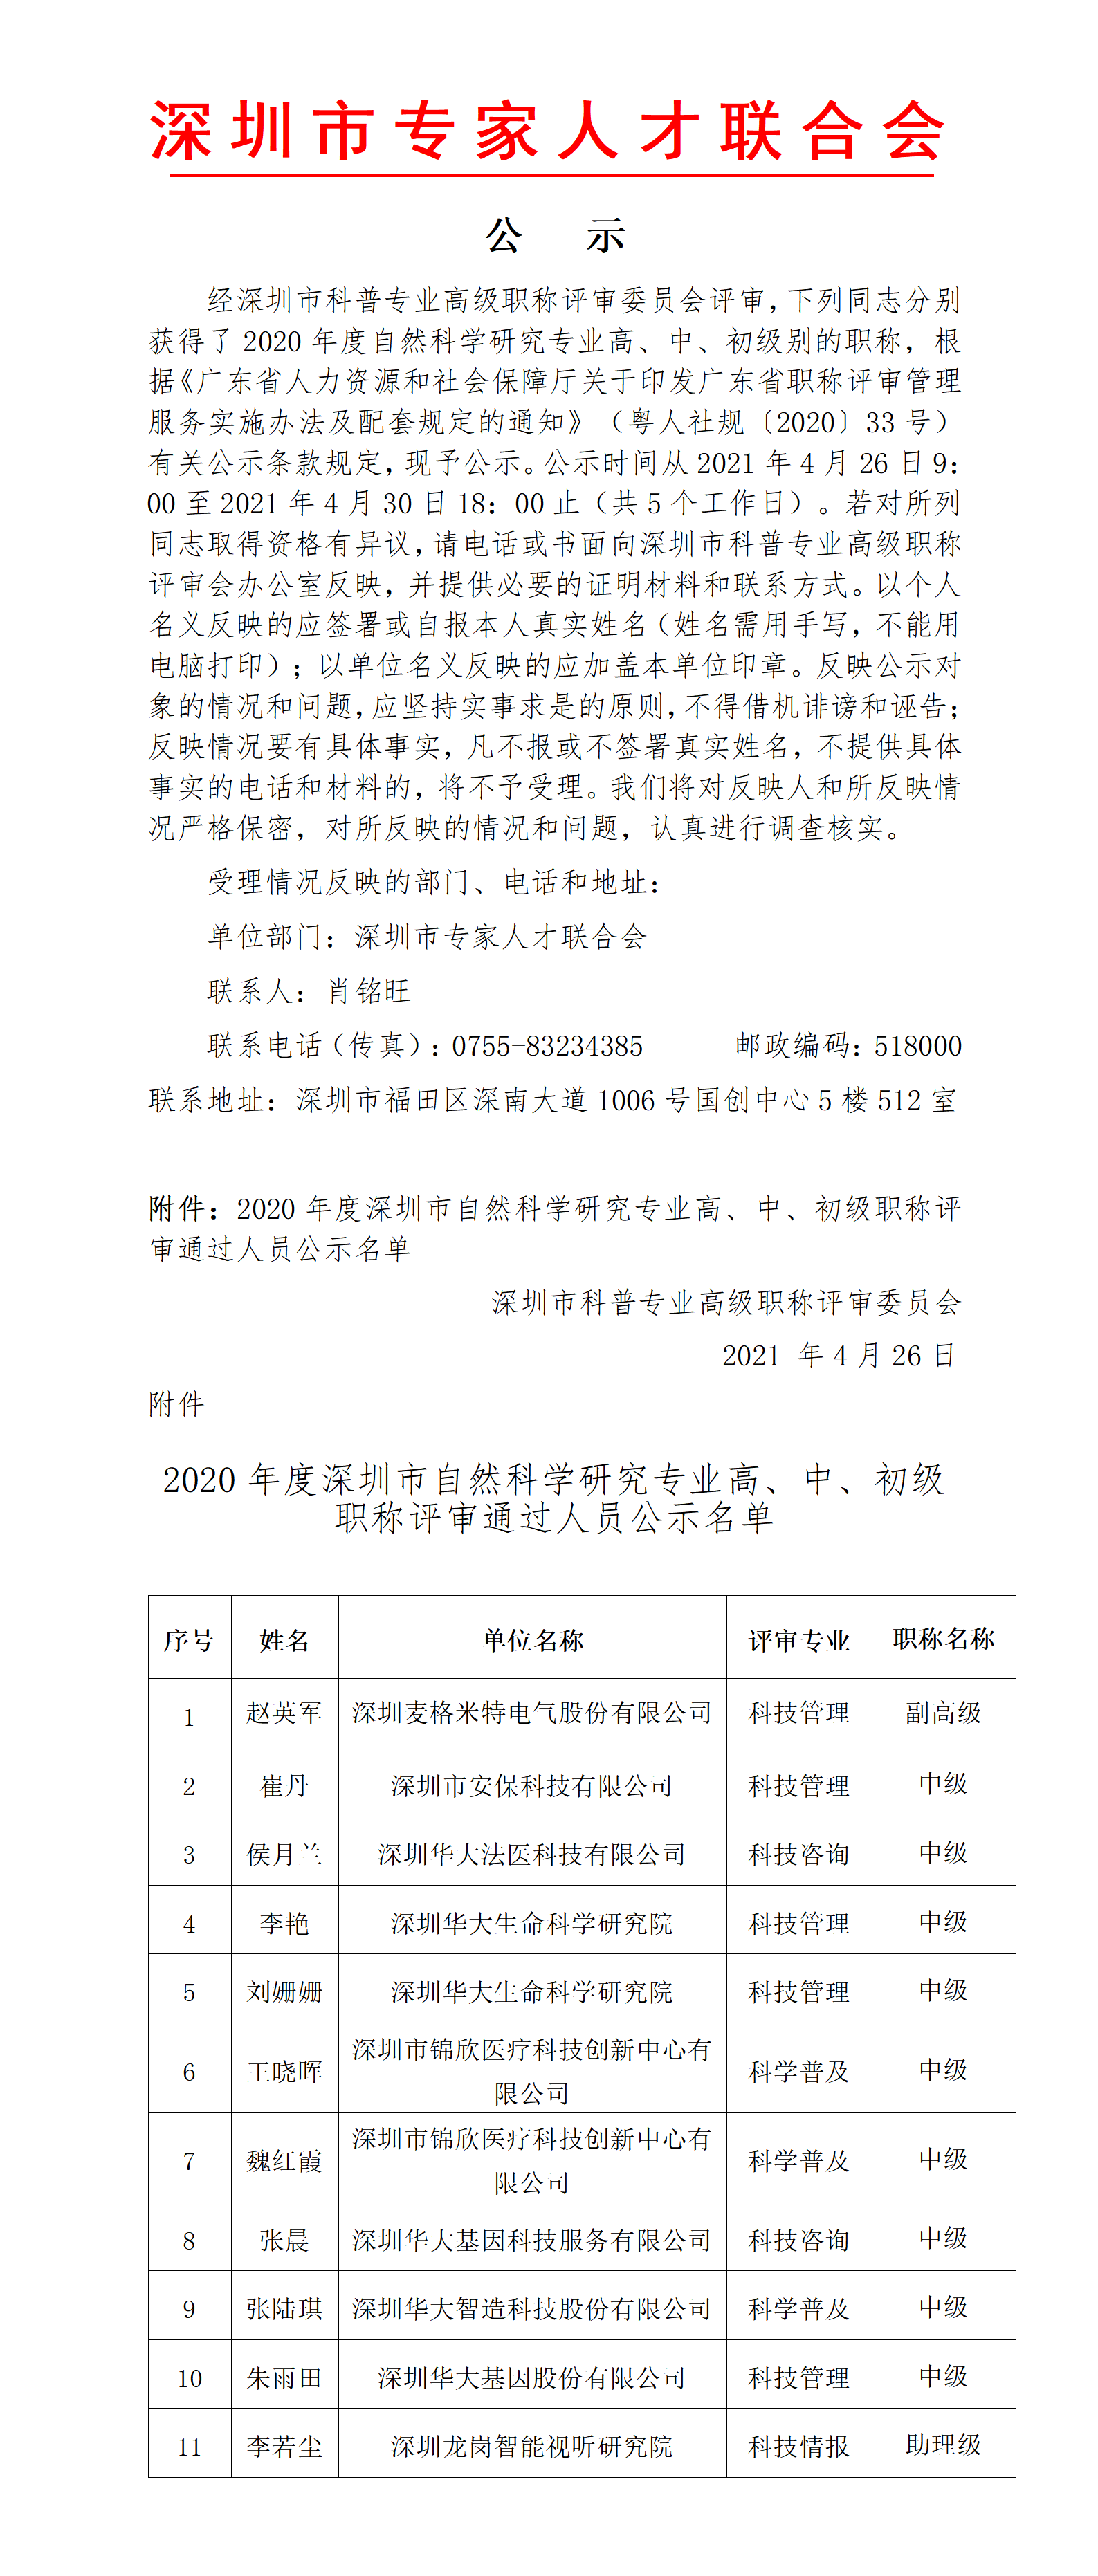 2020年度深圳市科普专业高级职称评审委员会通过人员公示